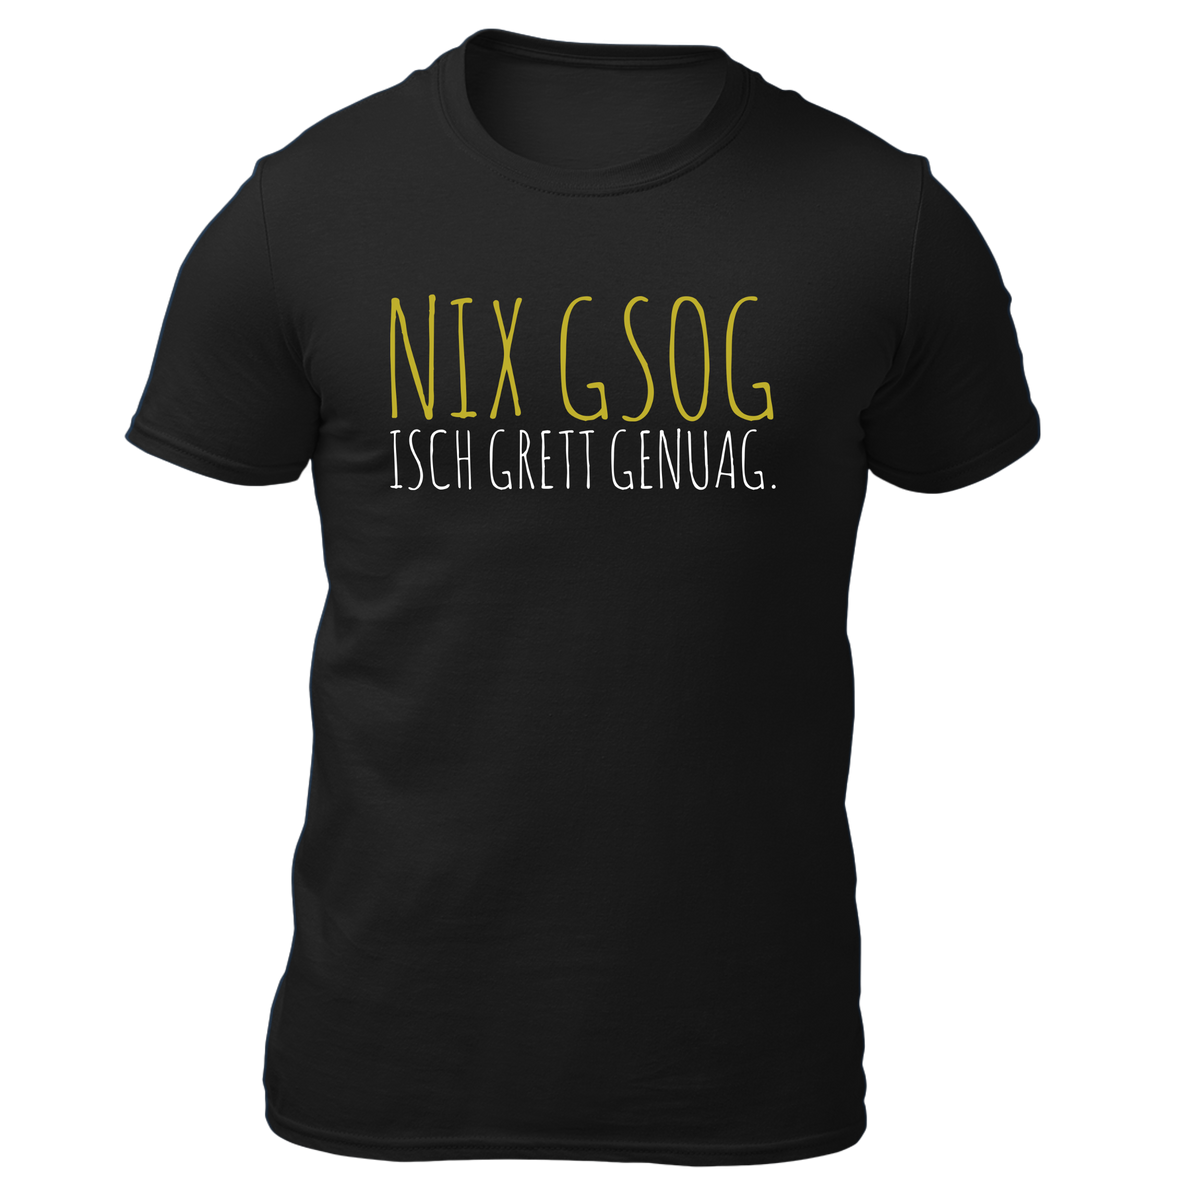 Nix gsog isch grett genuag - Herren Shirt Bio - Schwarz / S - Shirts & Tops